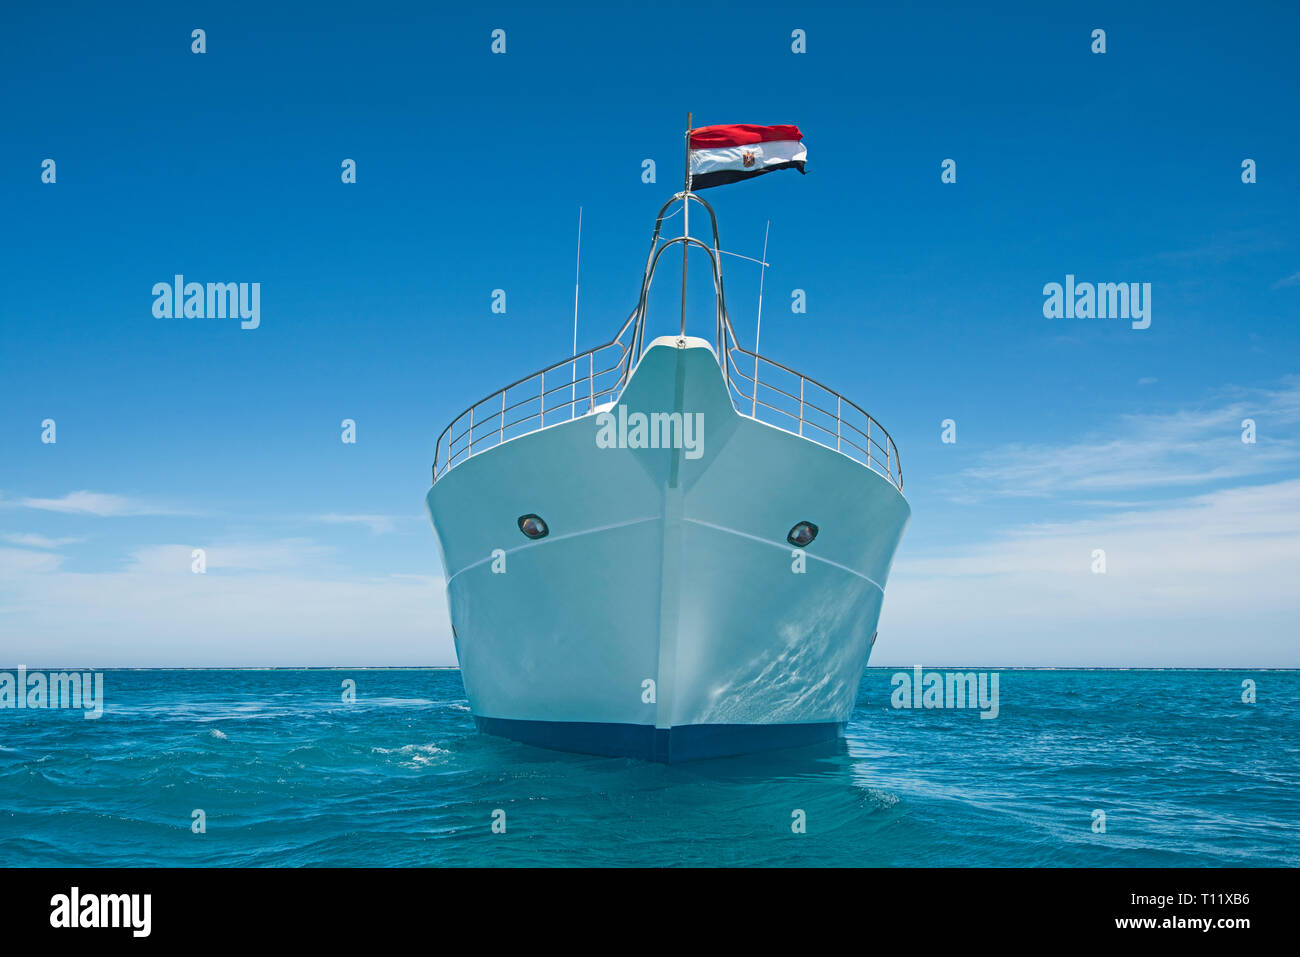 Der Bogen der großen Luxus Motor Yacht segeln auf tropischen Meer Ozean mit blauem Himmel Hintergrund Stockfoto